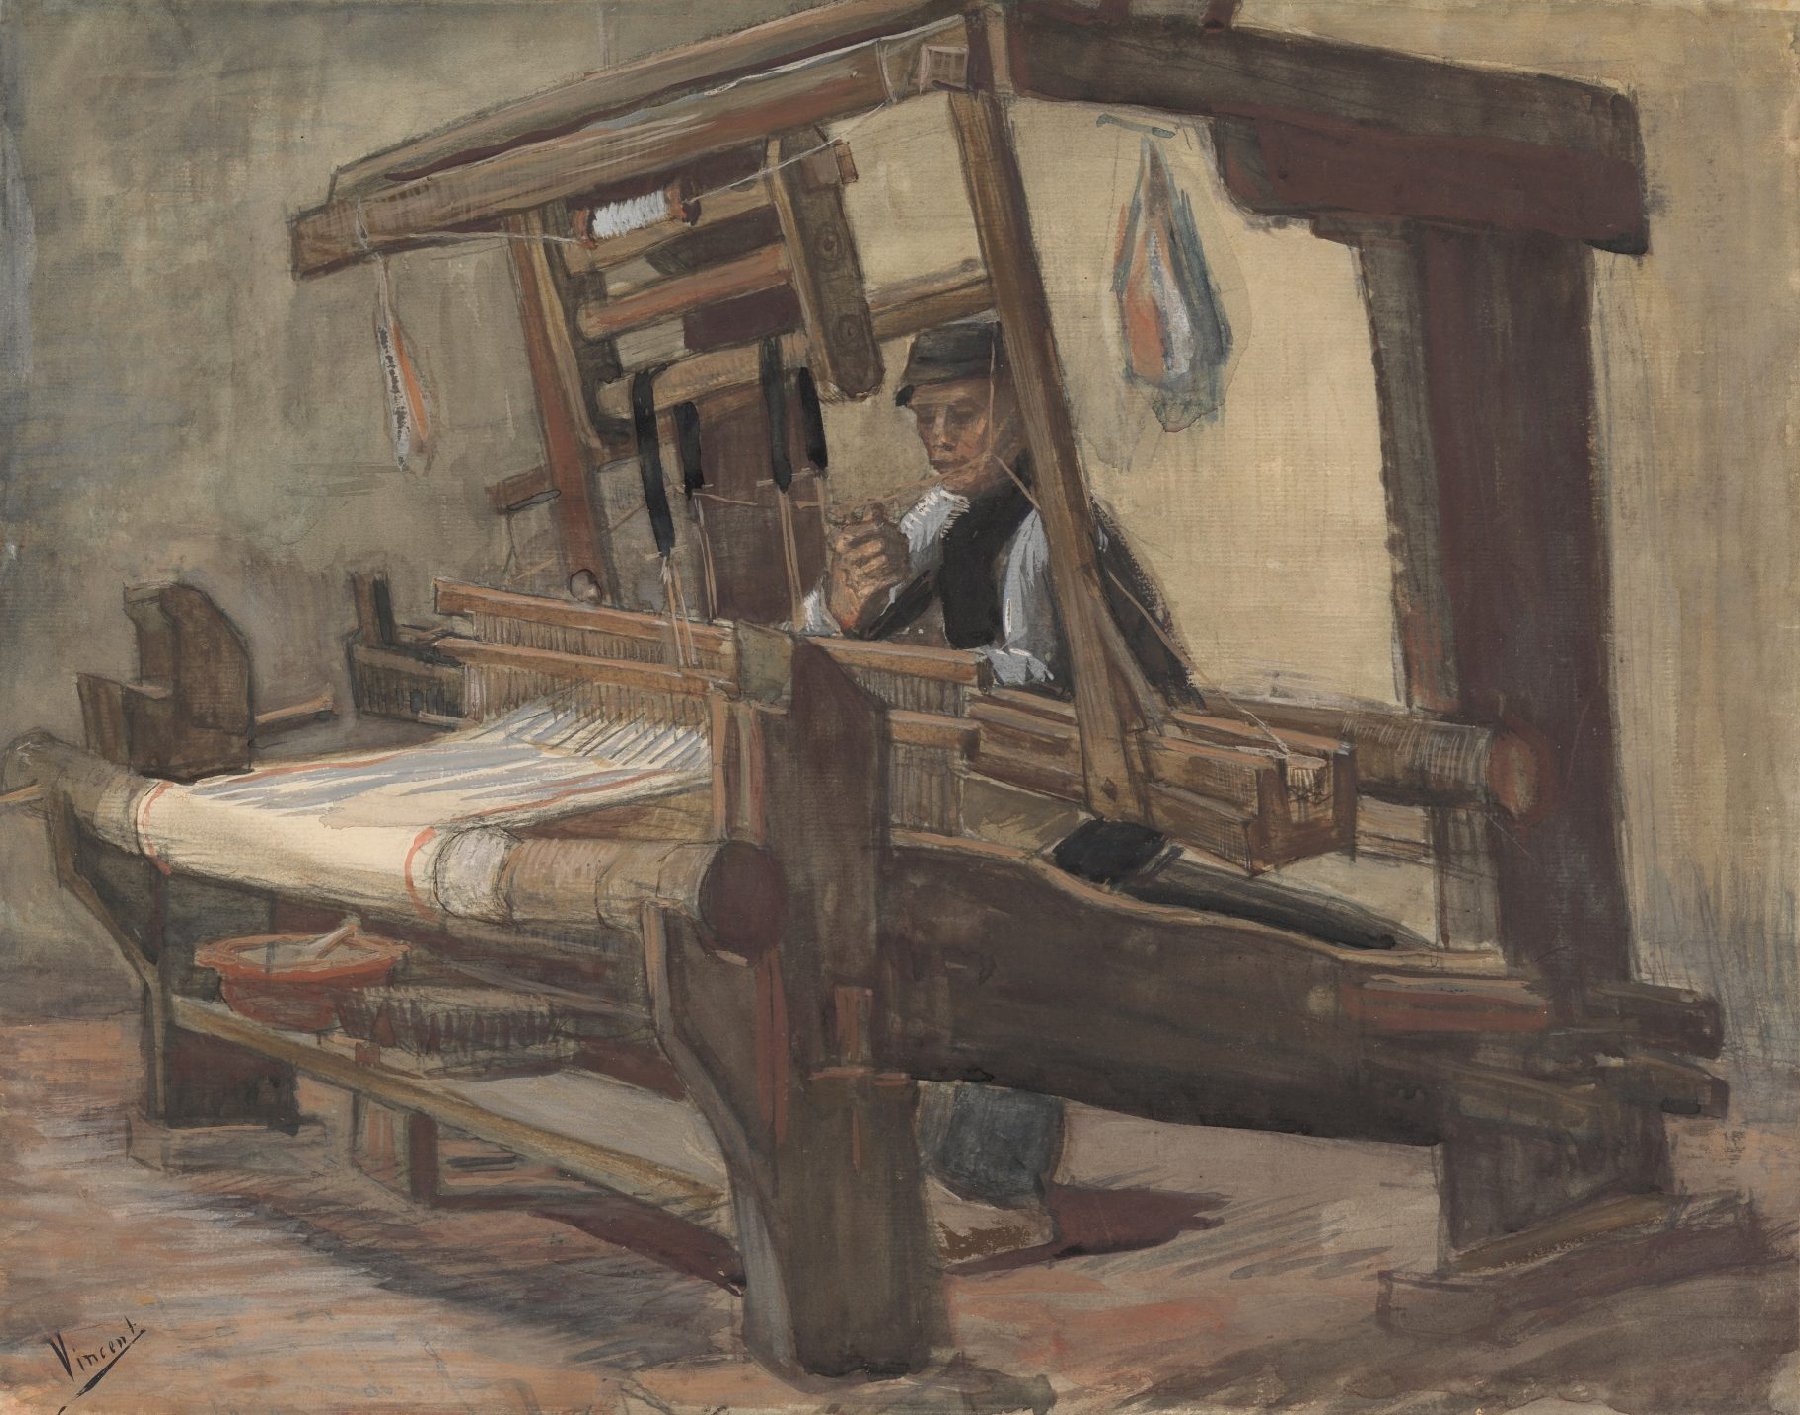 Wever Vincent van Gogh (1853 - 1890), Nuenen, januari-augustus 1884